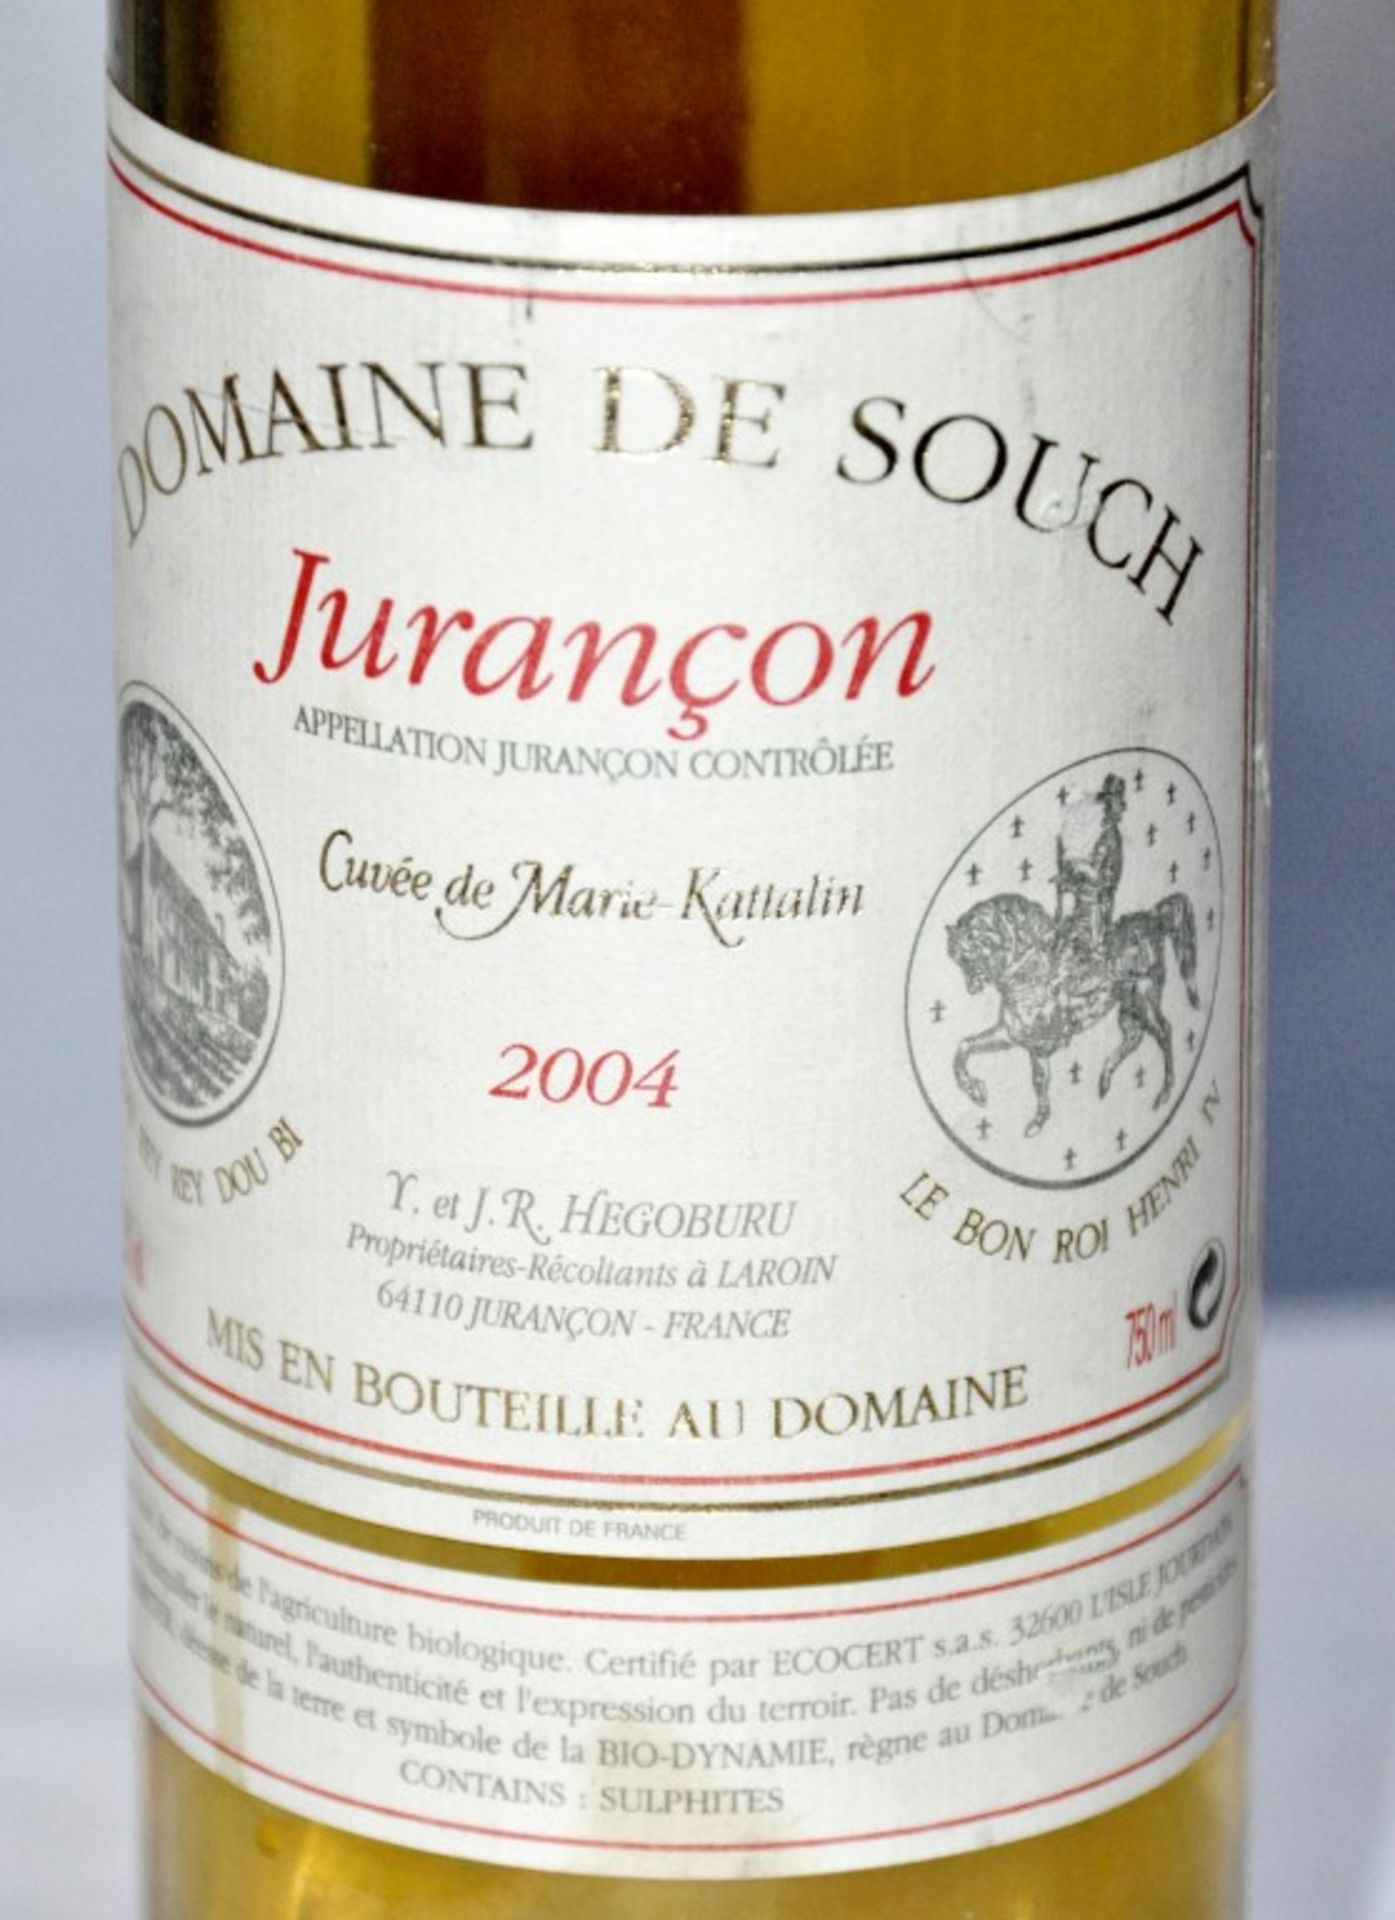 1 x Domaine de Souch Cuvee Marie Kattalin, Jurancon, France – 2004 - Volume 12.5% - 75cl – Ref W1069 - Image 2 of 3